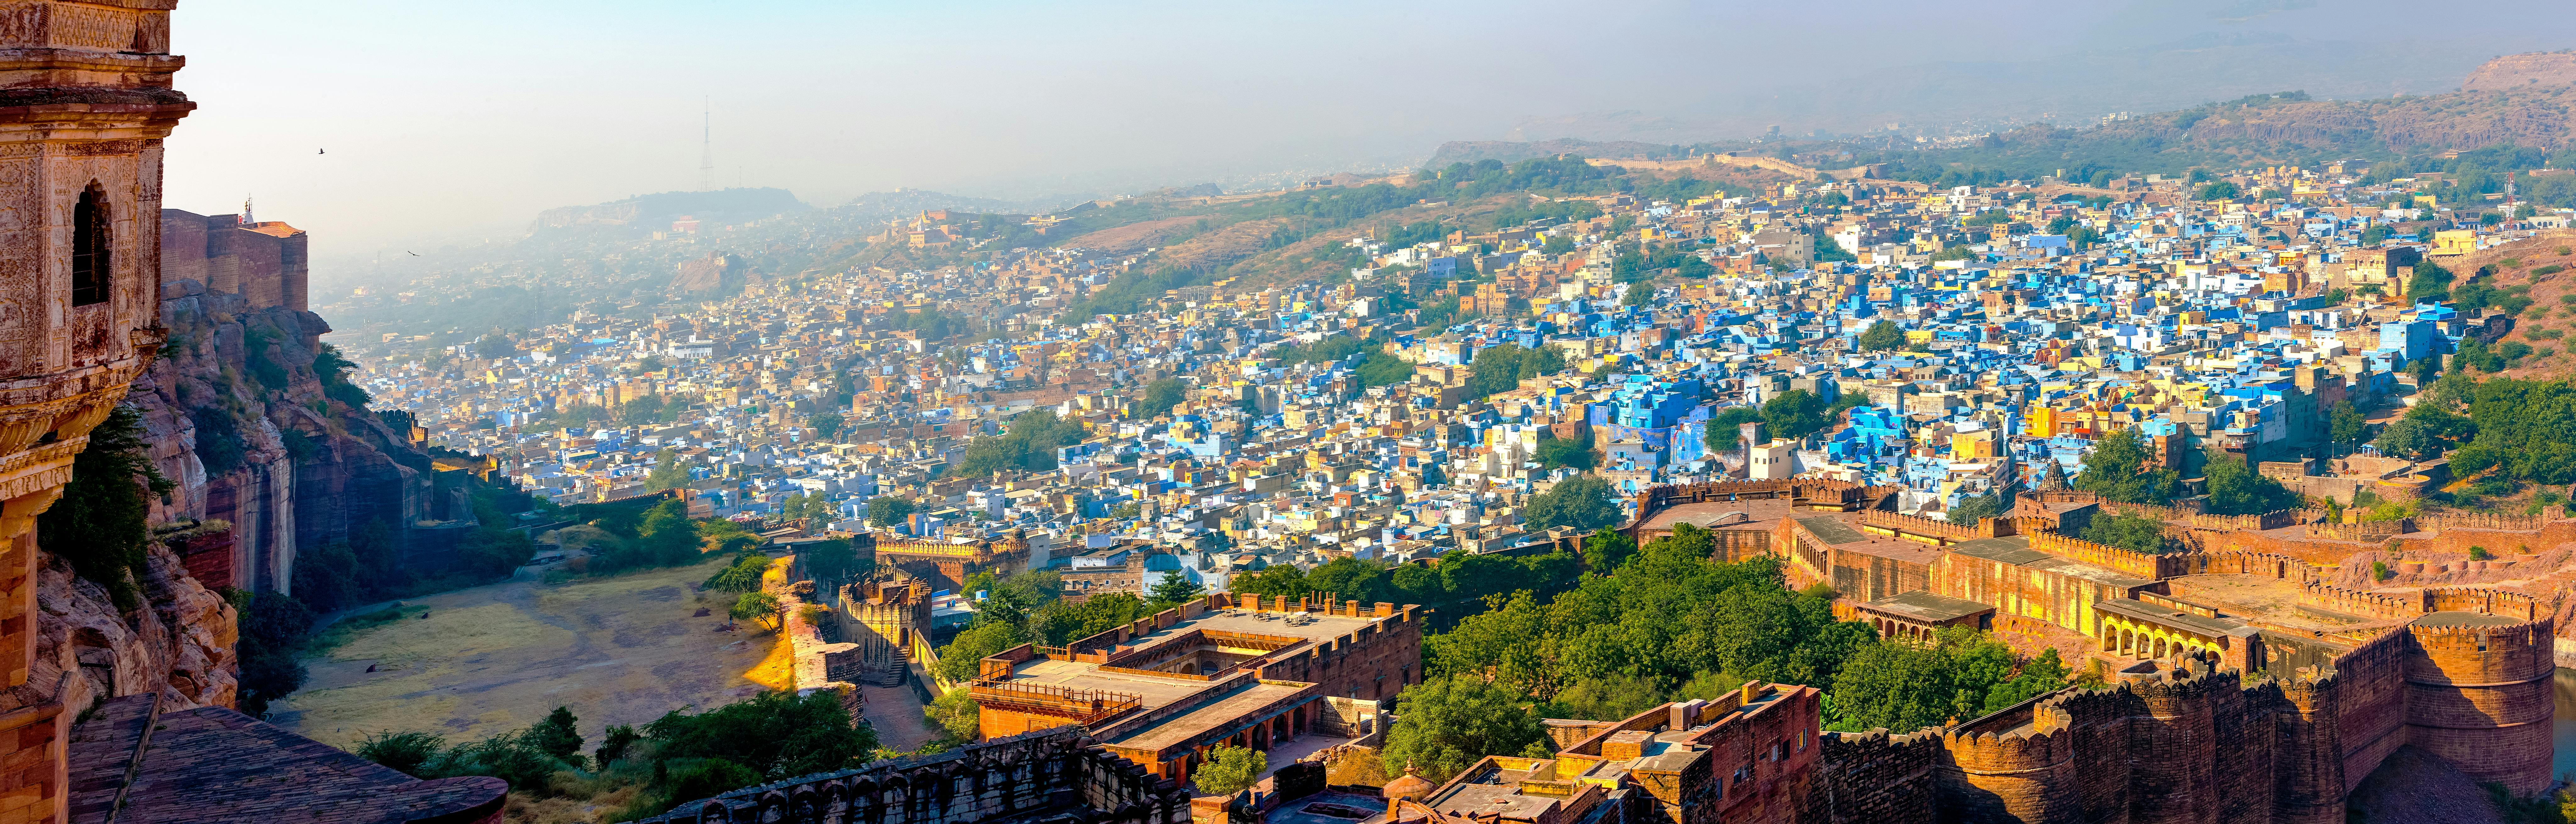 Halbtägige private Tour durch die Stadt Jaipur